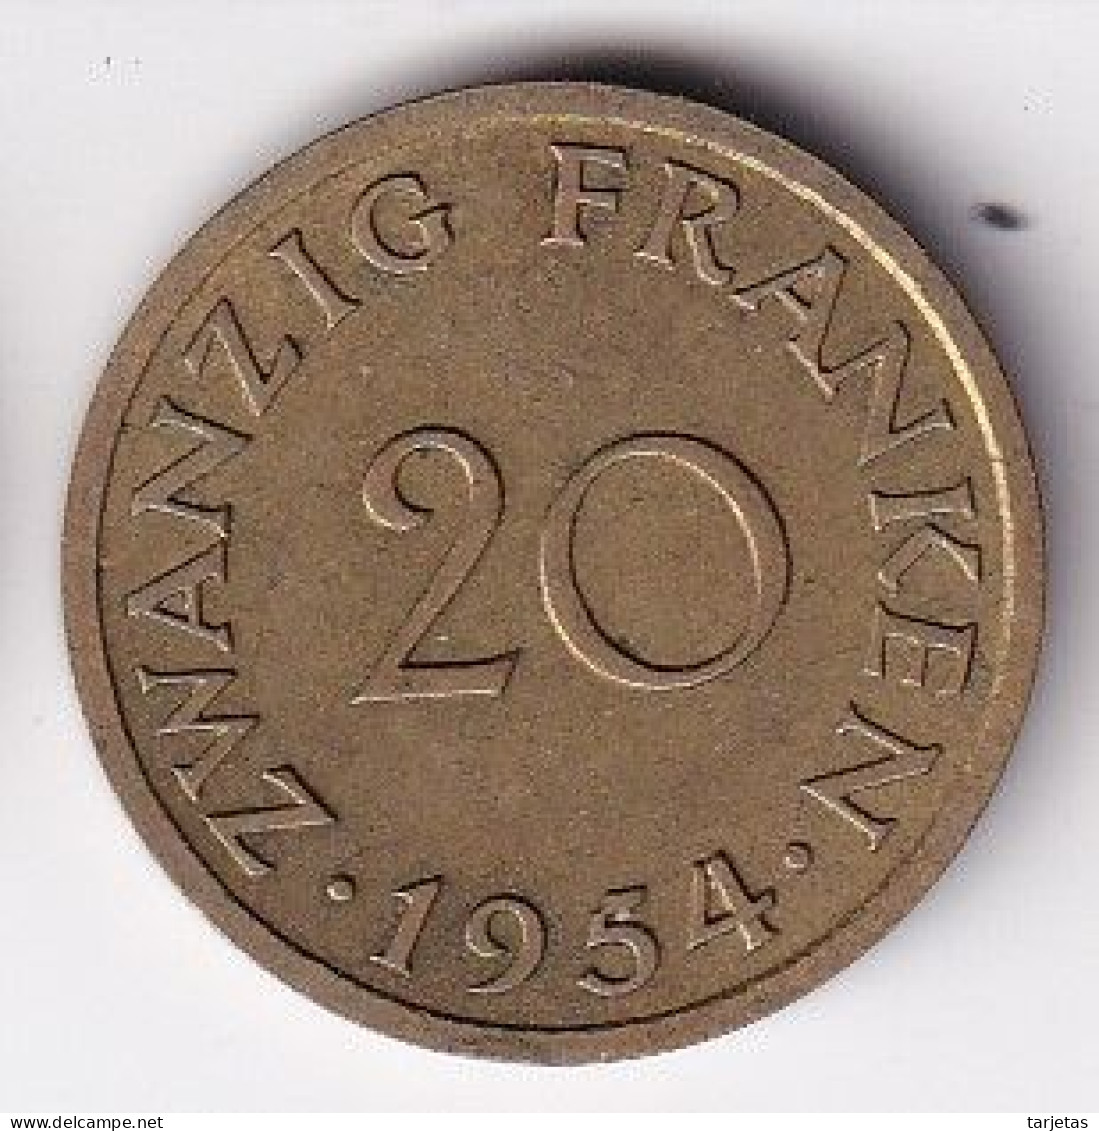 MONEDA DE SARRE DE 20 FRANCS DEL AÑO 1954 - 20 Frank